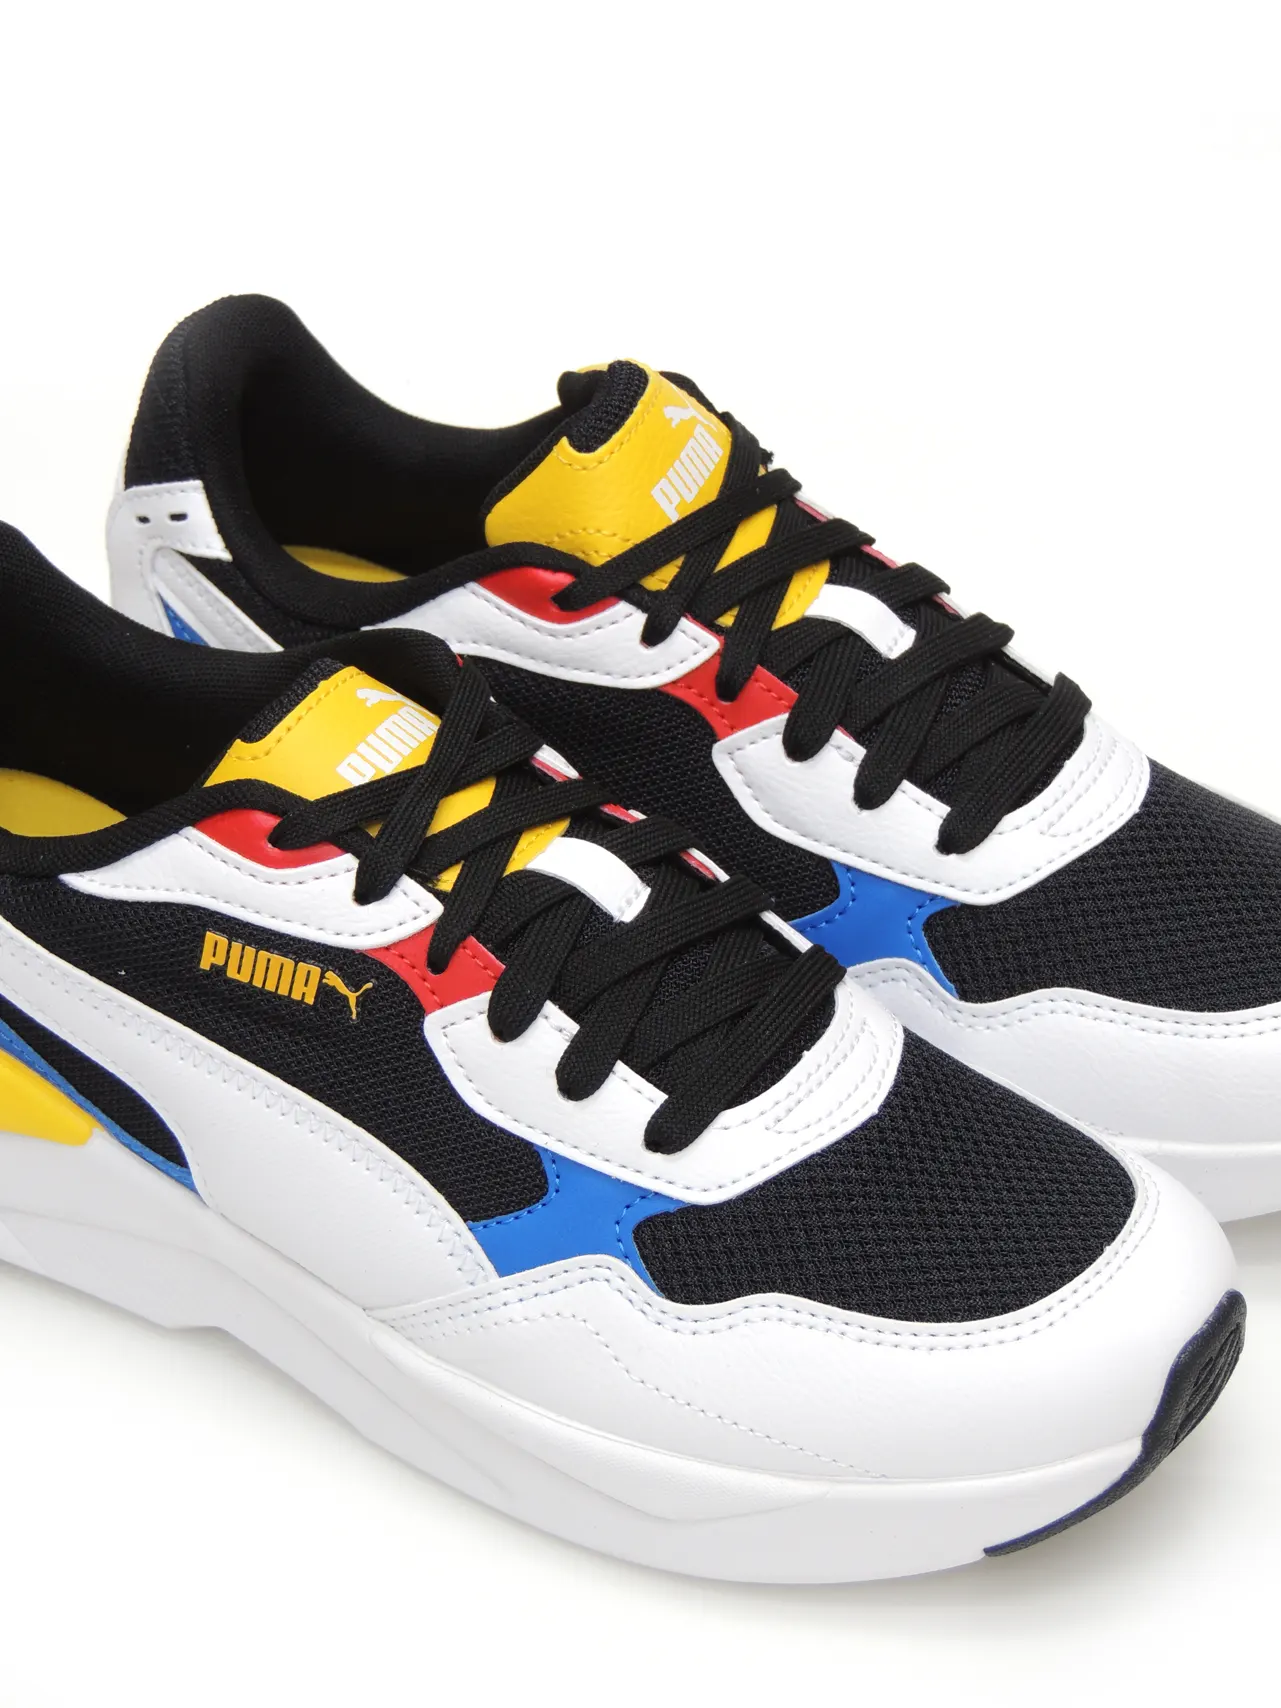 sneakers--puma-384639b-polipiel-multicolor